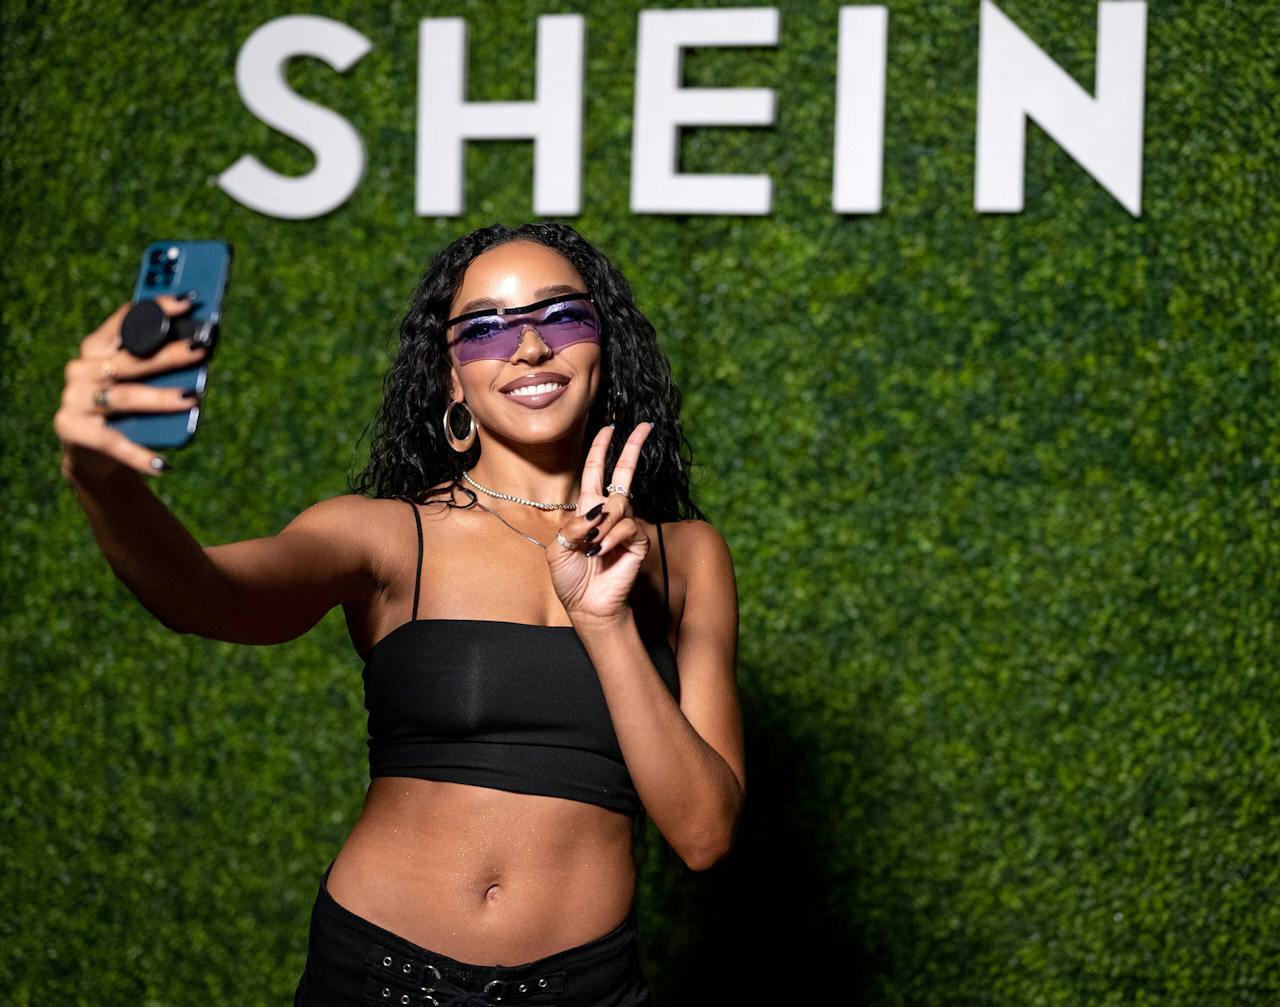 De Chinese, ultragoedkope webwinkel Shein is op sociale media het meest populaire bedrijf. Het werkt ter promotie veel samen met beroemdheden, zoals de Amerikaanse zangeres Tinashe.